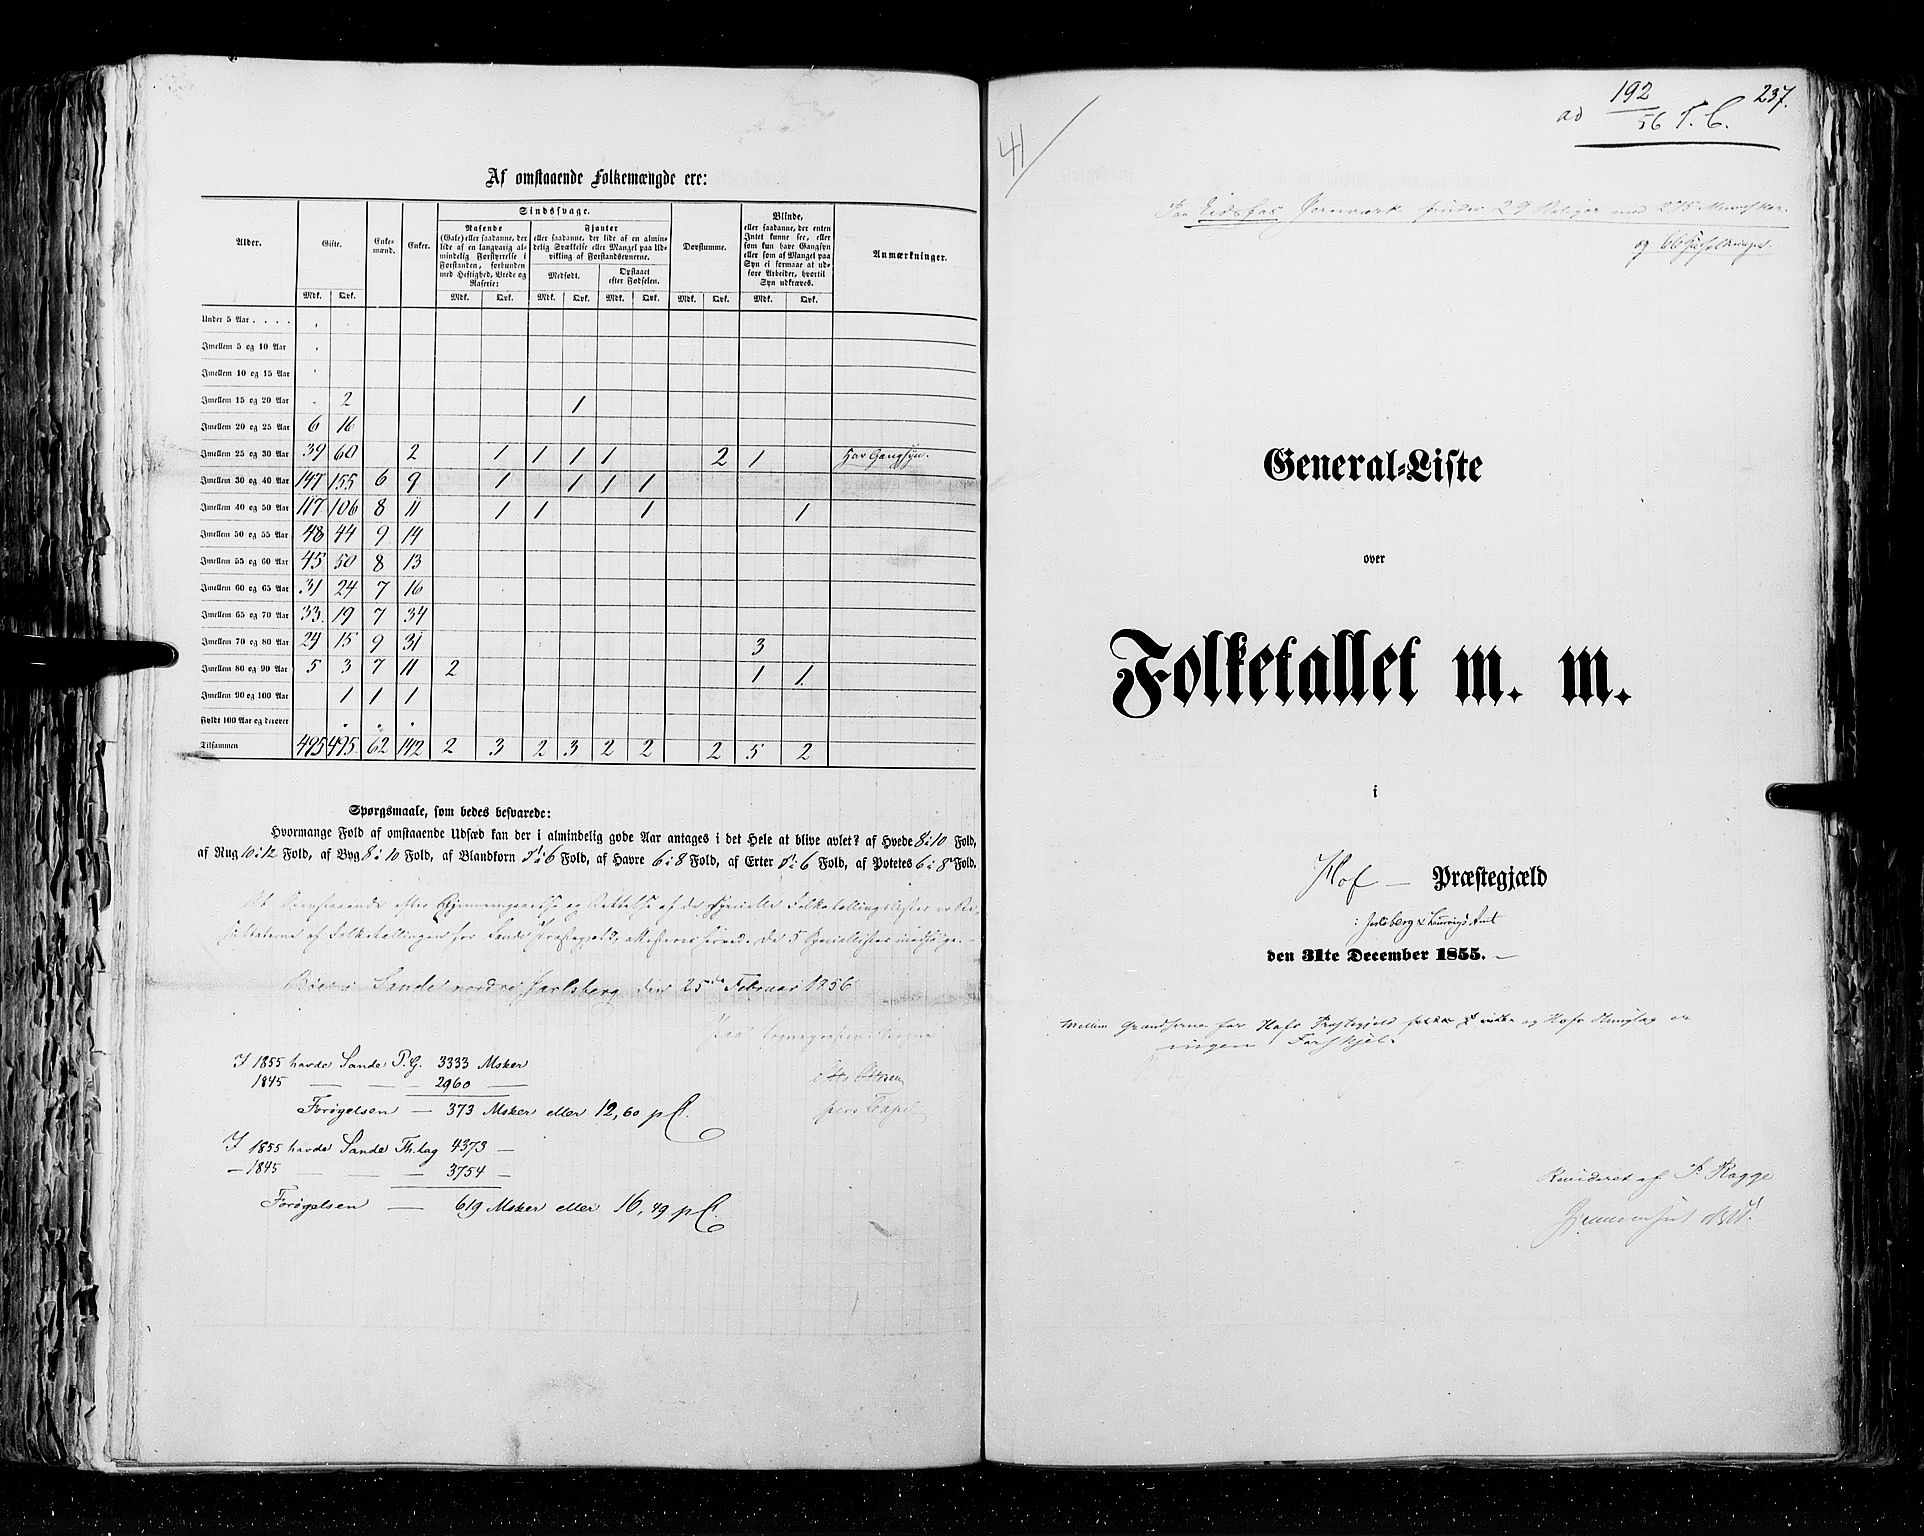 RA, Census 1855, vol. 2: Kristians amt, Buskerud amt og Jarlsberg og Larvik amt, 1855, p. 237